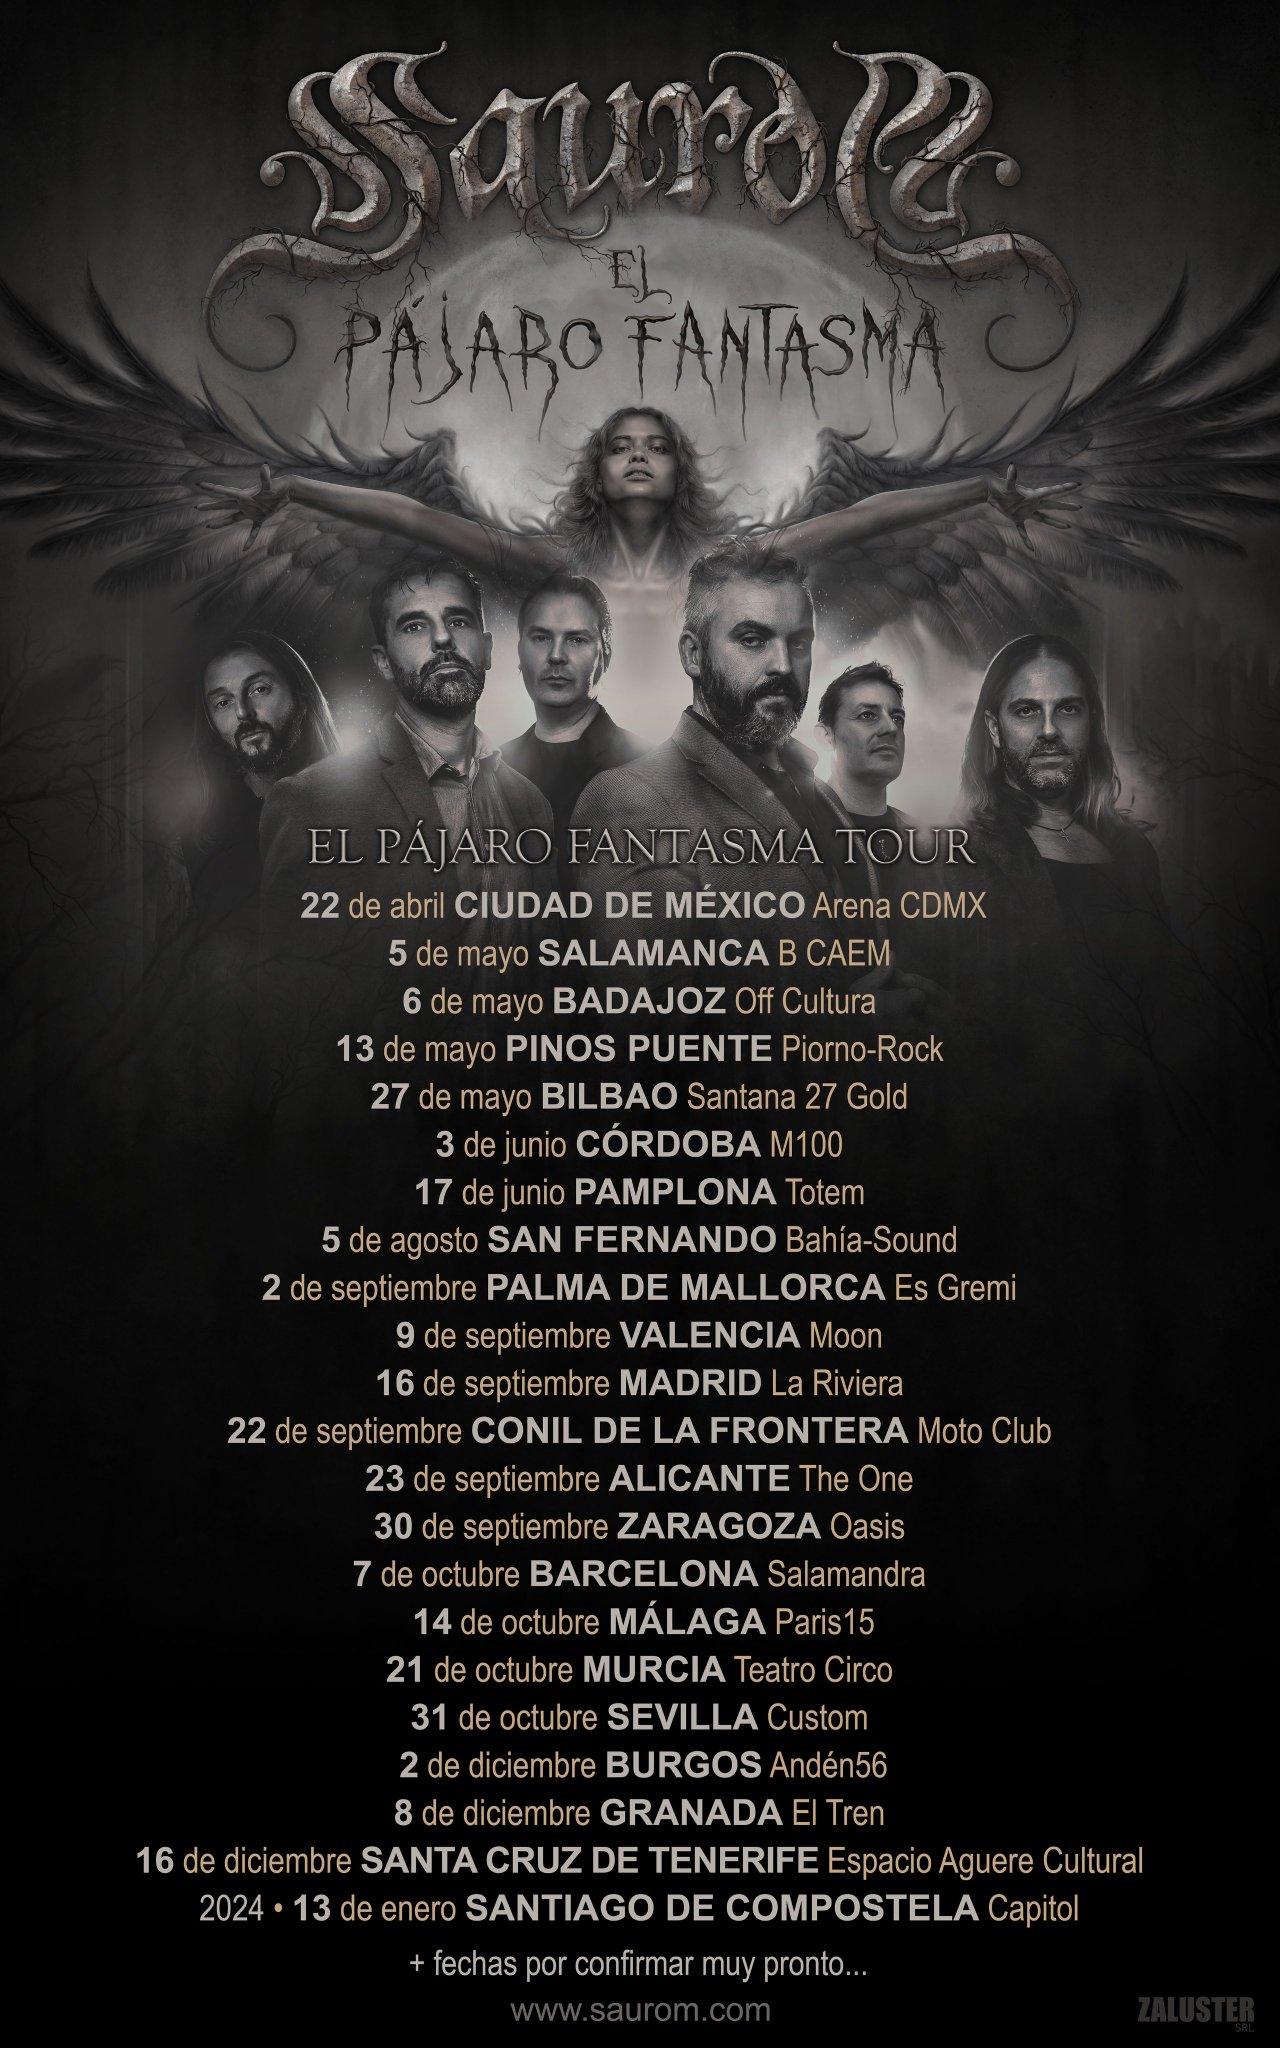 Más fechas confirmadas para la gira “El pájaro fantasma” de Saurom